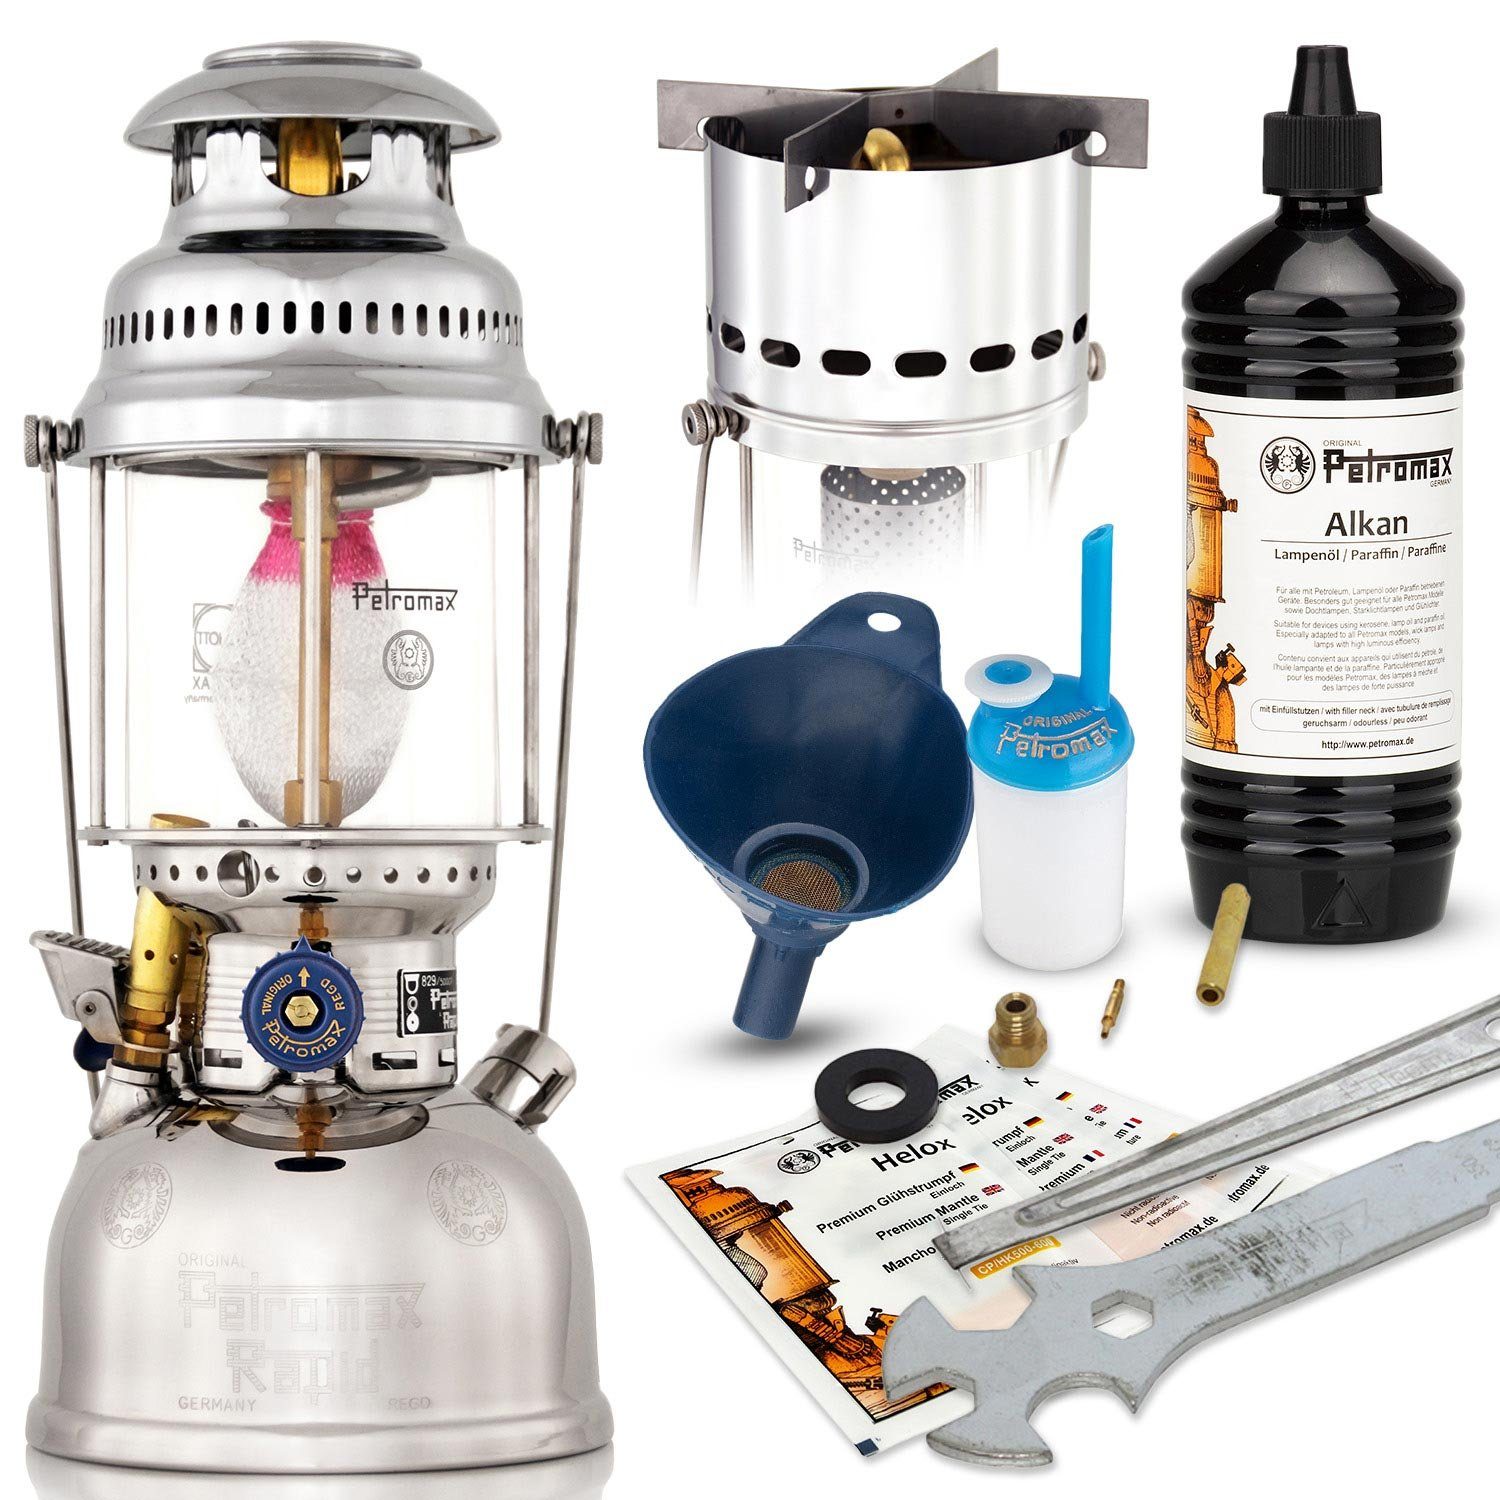 Glühstrumpf, Petromax mit HK500 Tischleuchte Tischlampe Starklichtlampe Hängeleuchte, Kochaufsatz, Messing Kaltweiß, verchromt